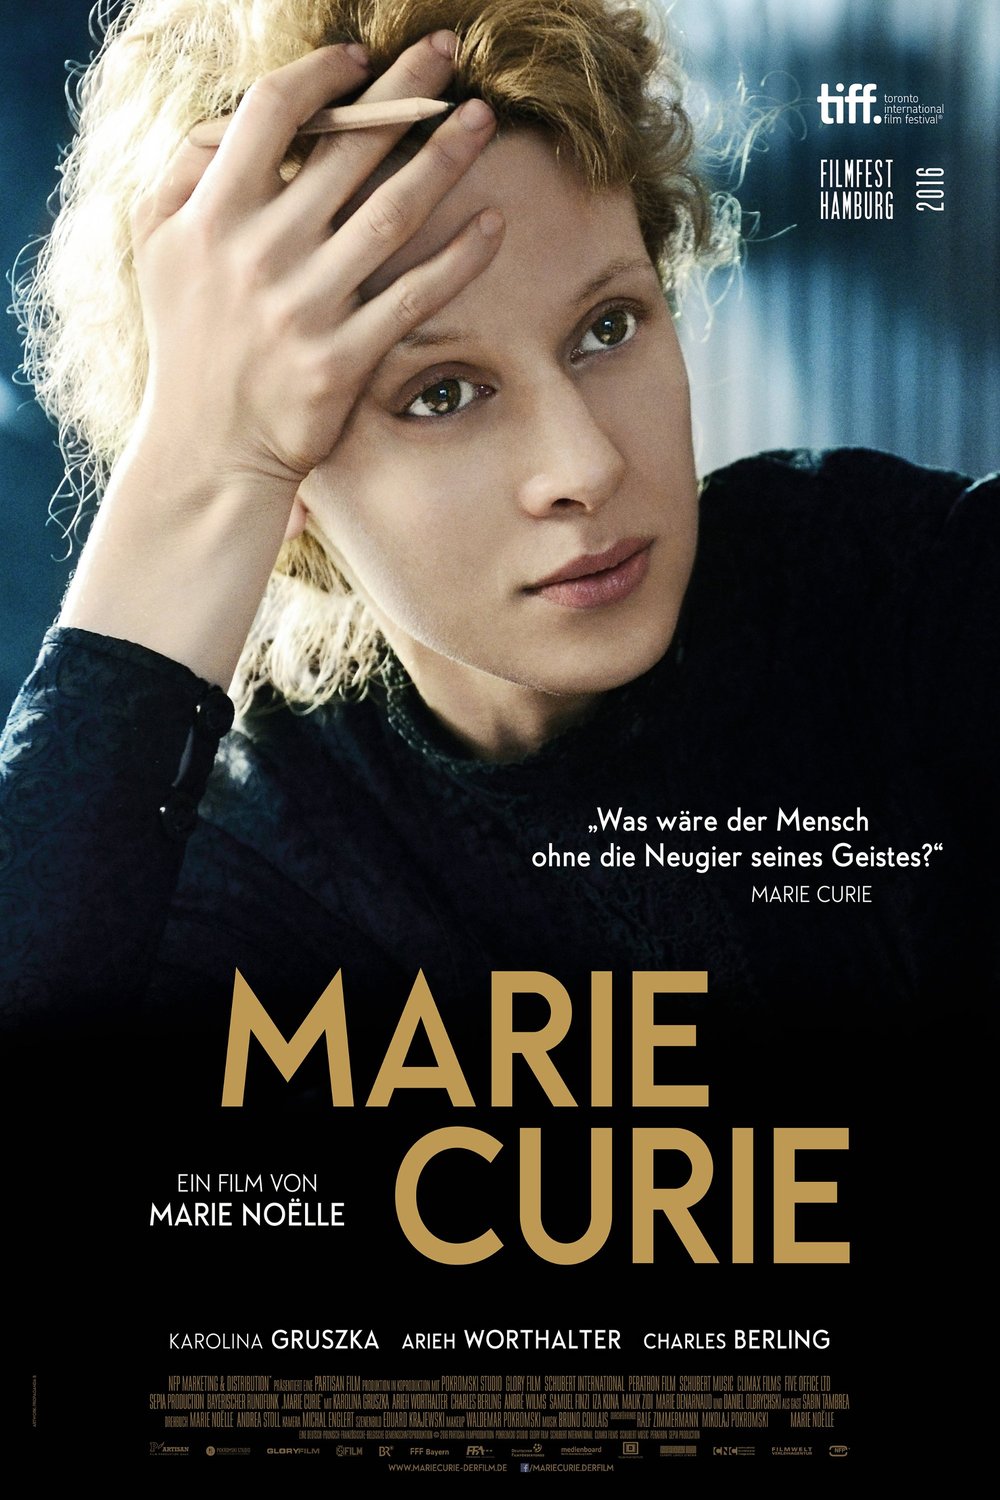 L'affiche originale du film Marie Curie: The Courage of Knowledge en allemand